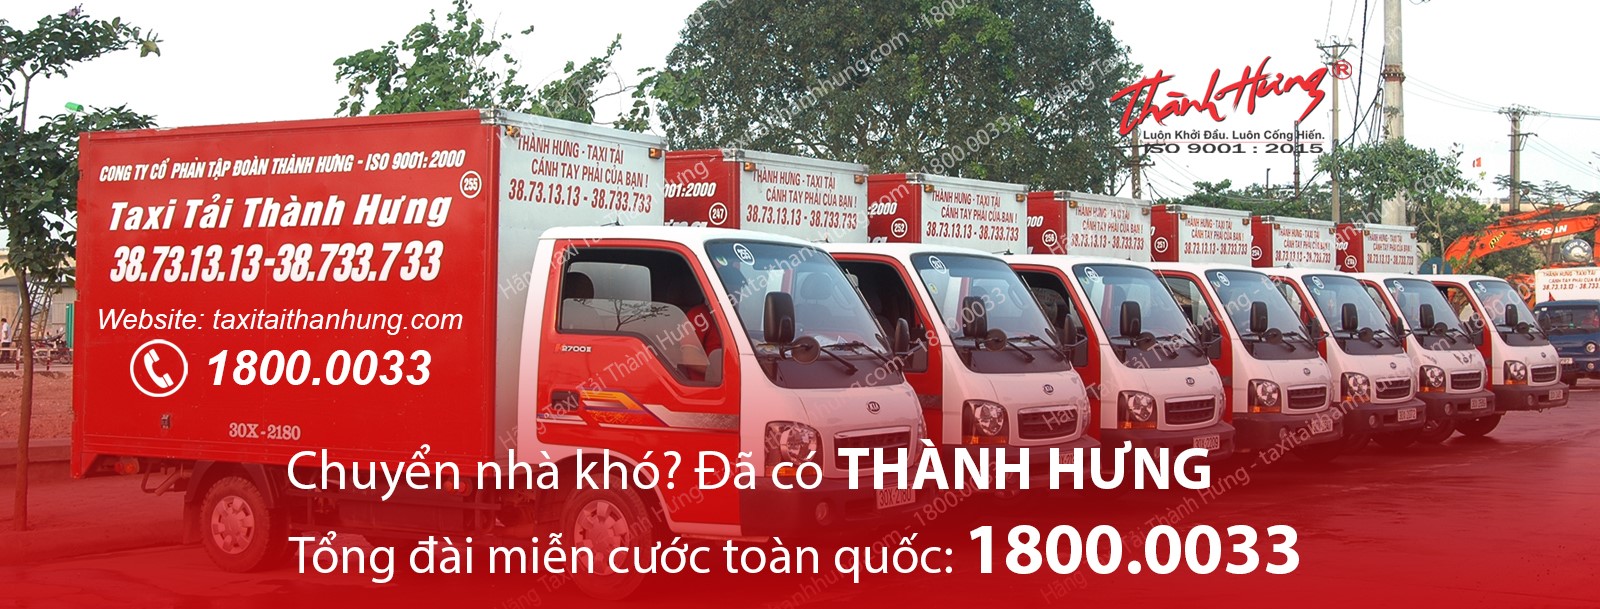 Dịch Vụ Taxi Tải Thành Hưng – Chuyển nhà, văn phòng, chở hàng